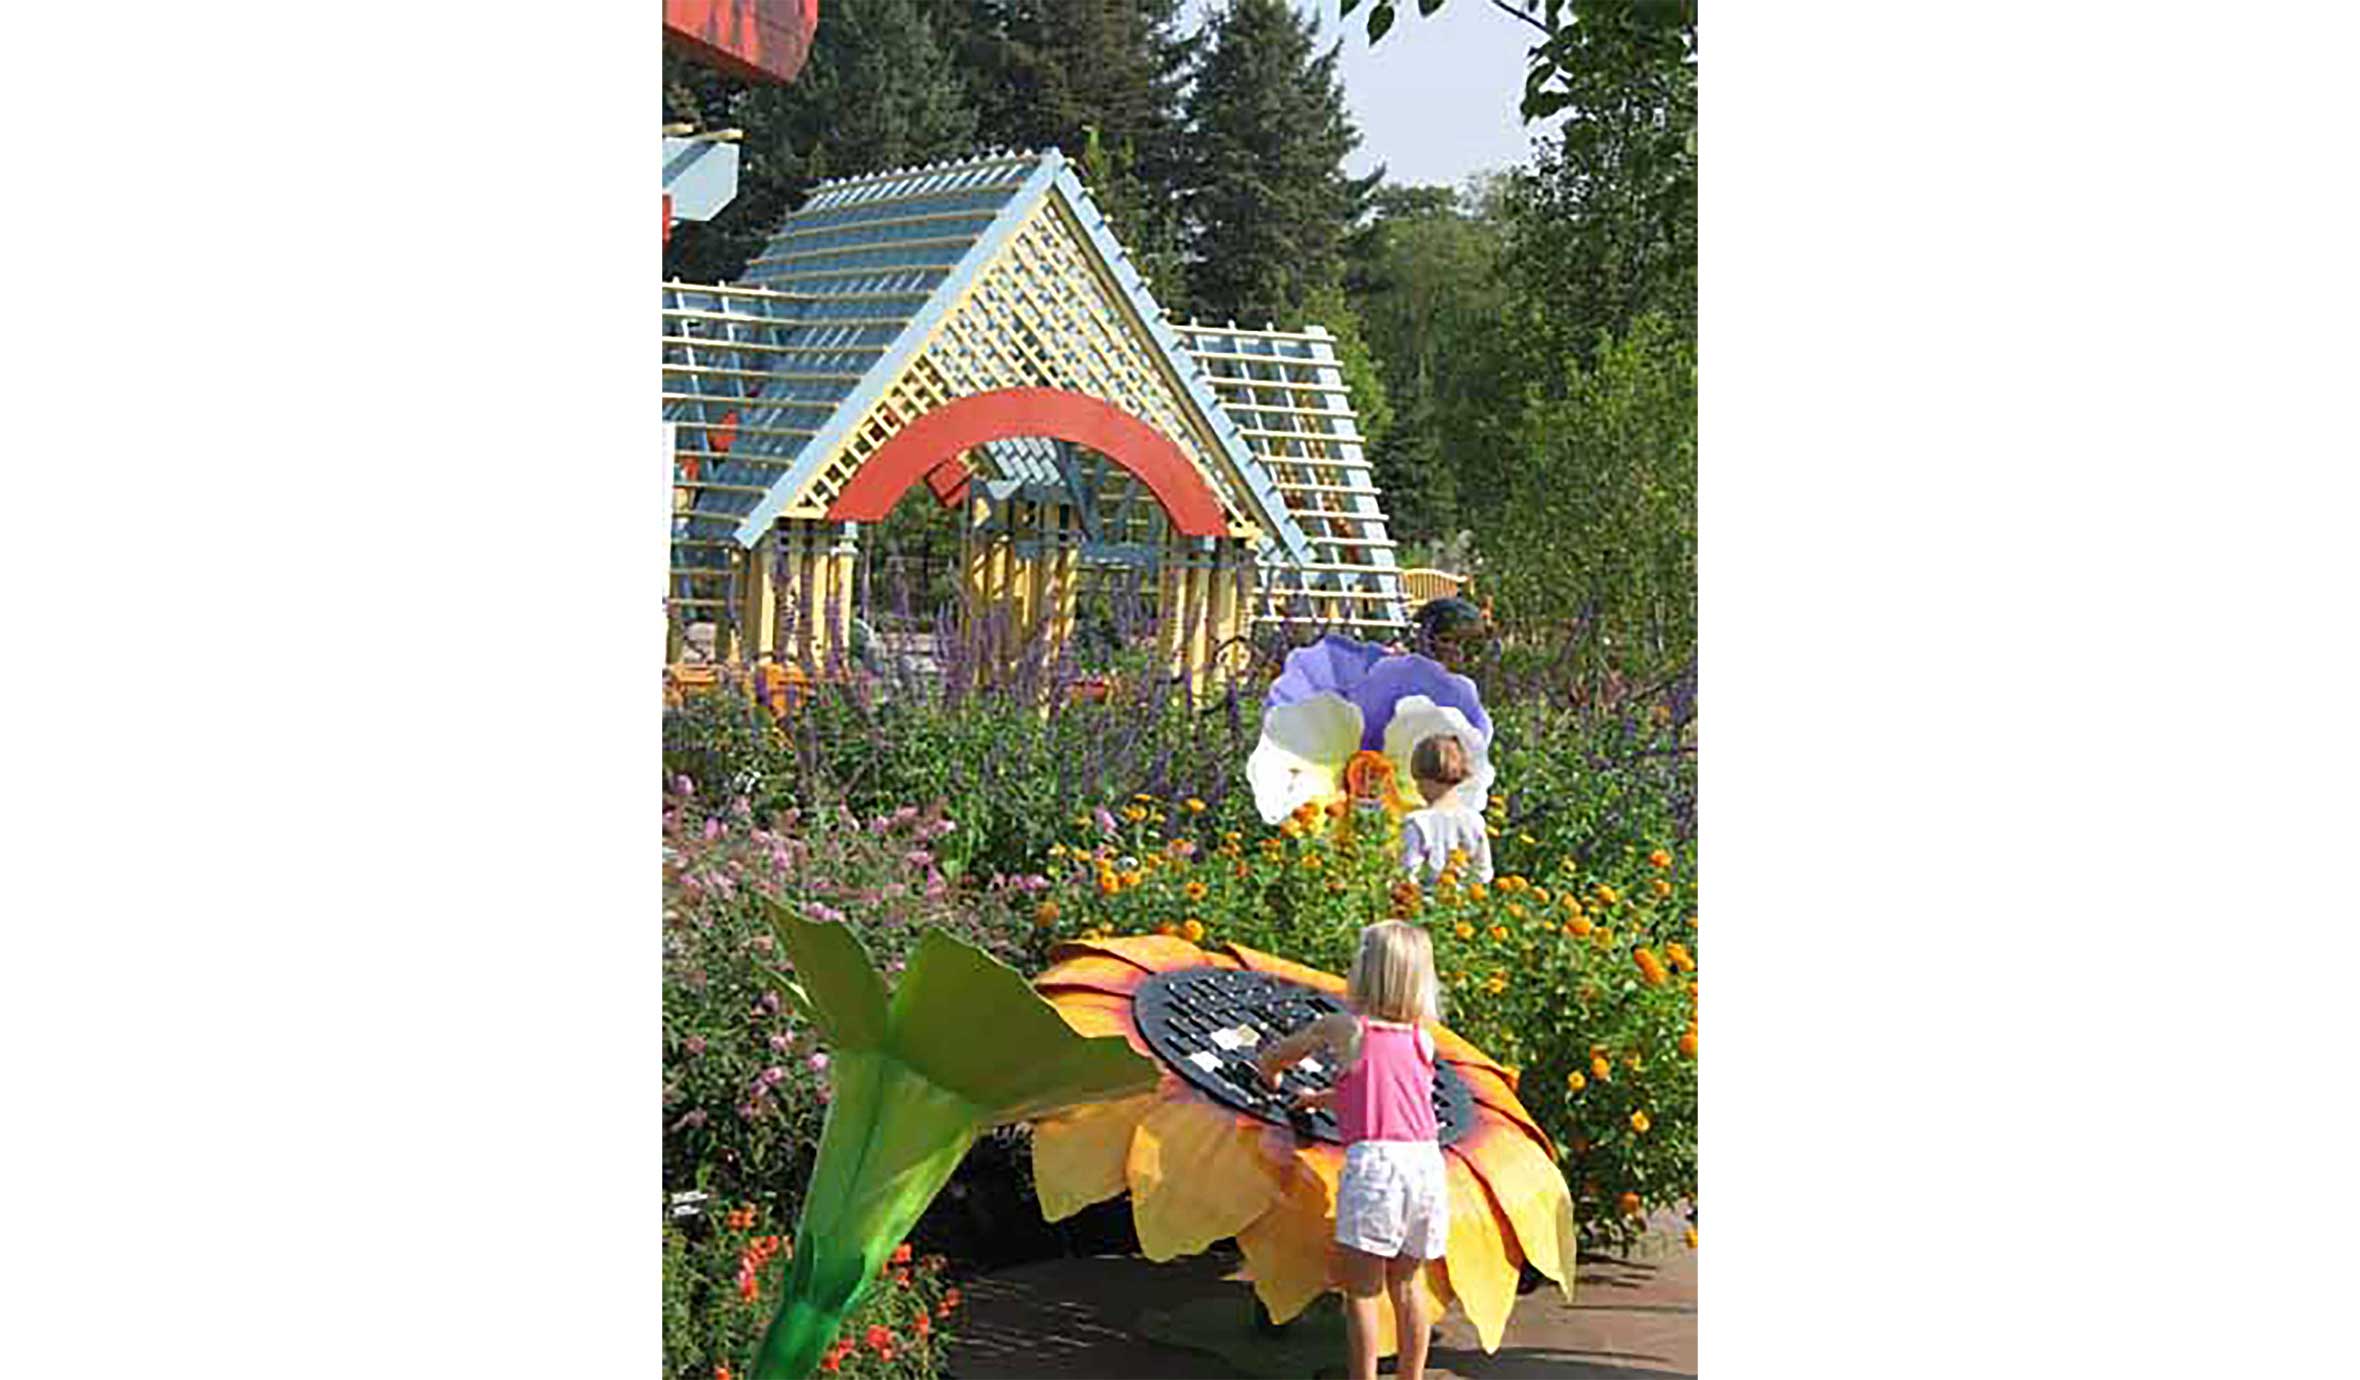 Morton-Arboretum-Children's-Garden-2